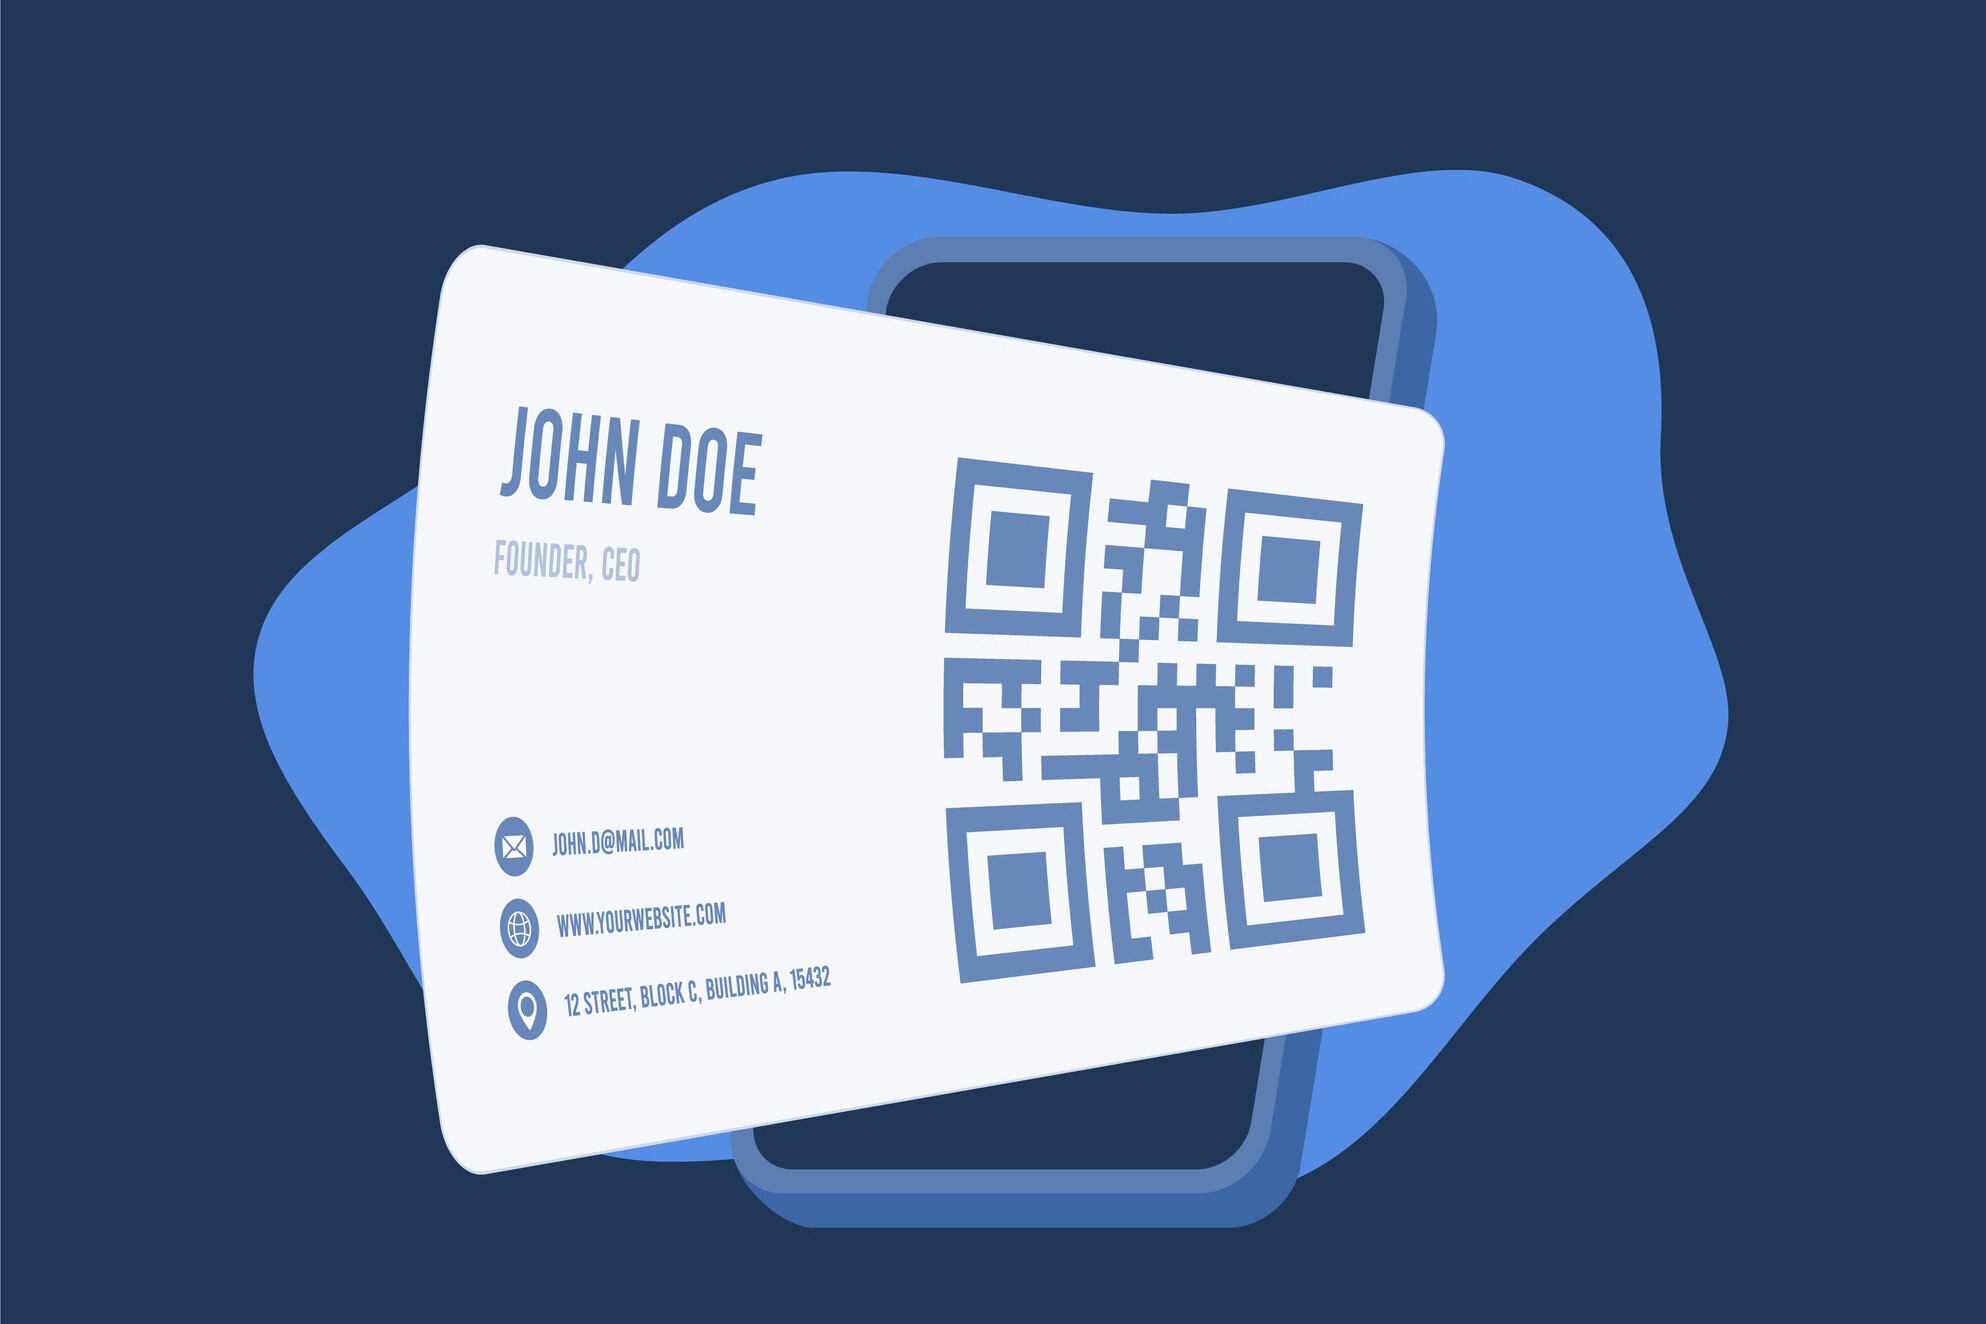 Business Cards for John Doe